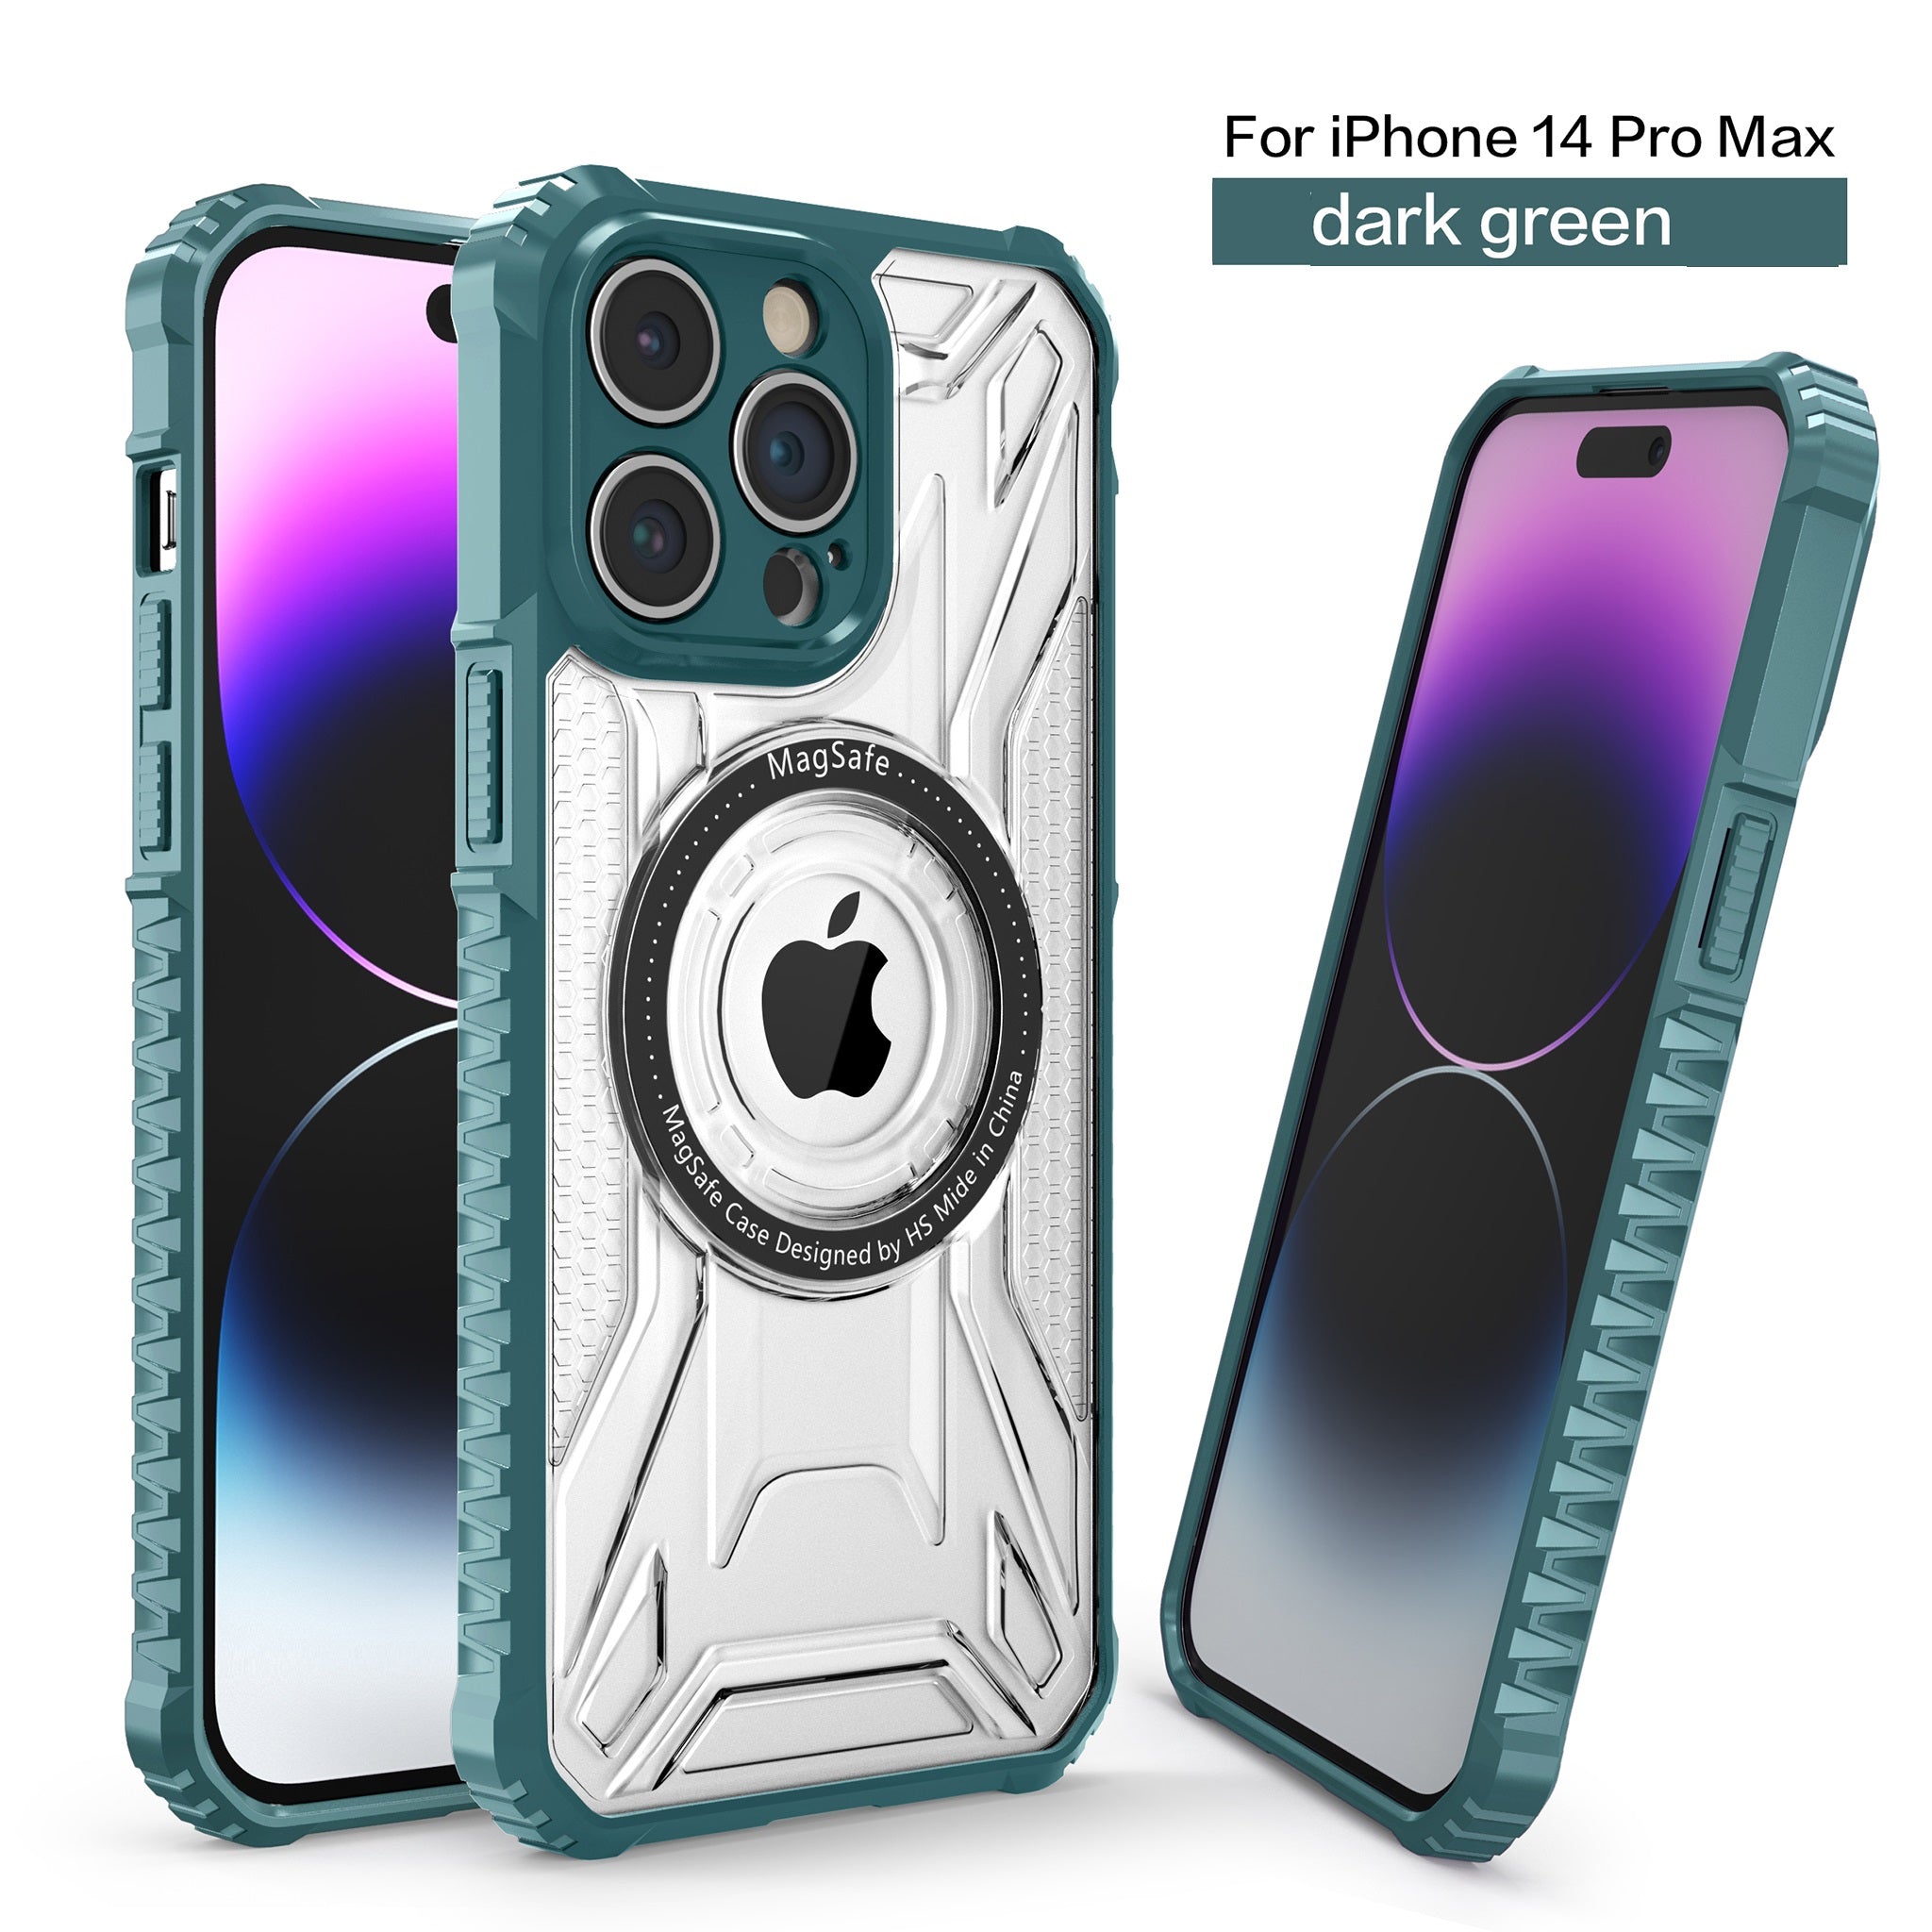 MC9 Design Case for iPhone 14 Pro